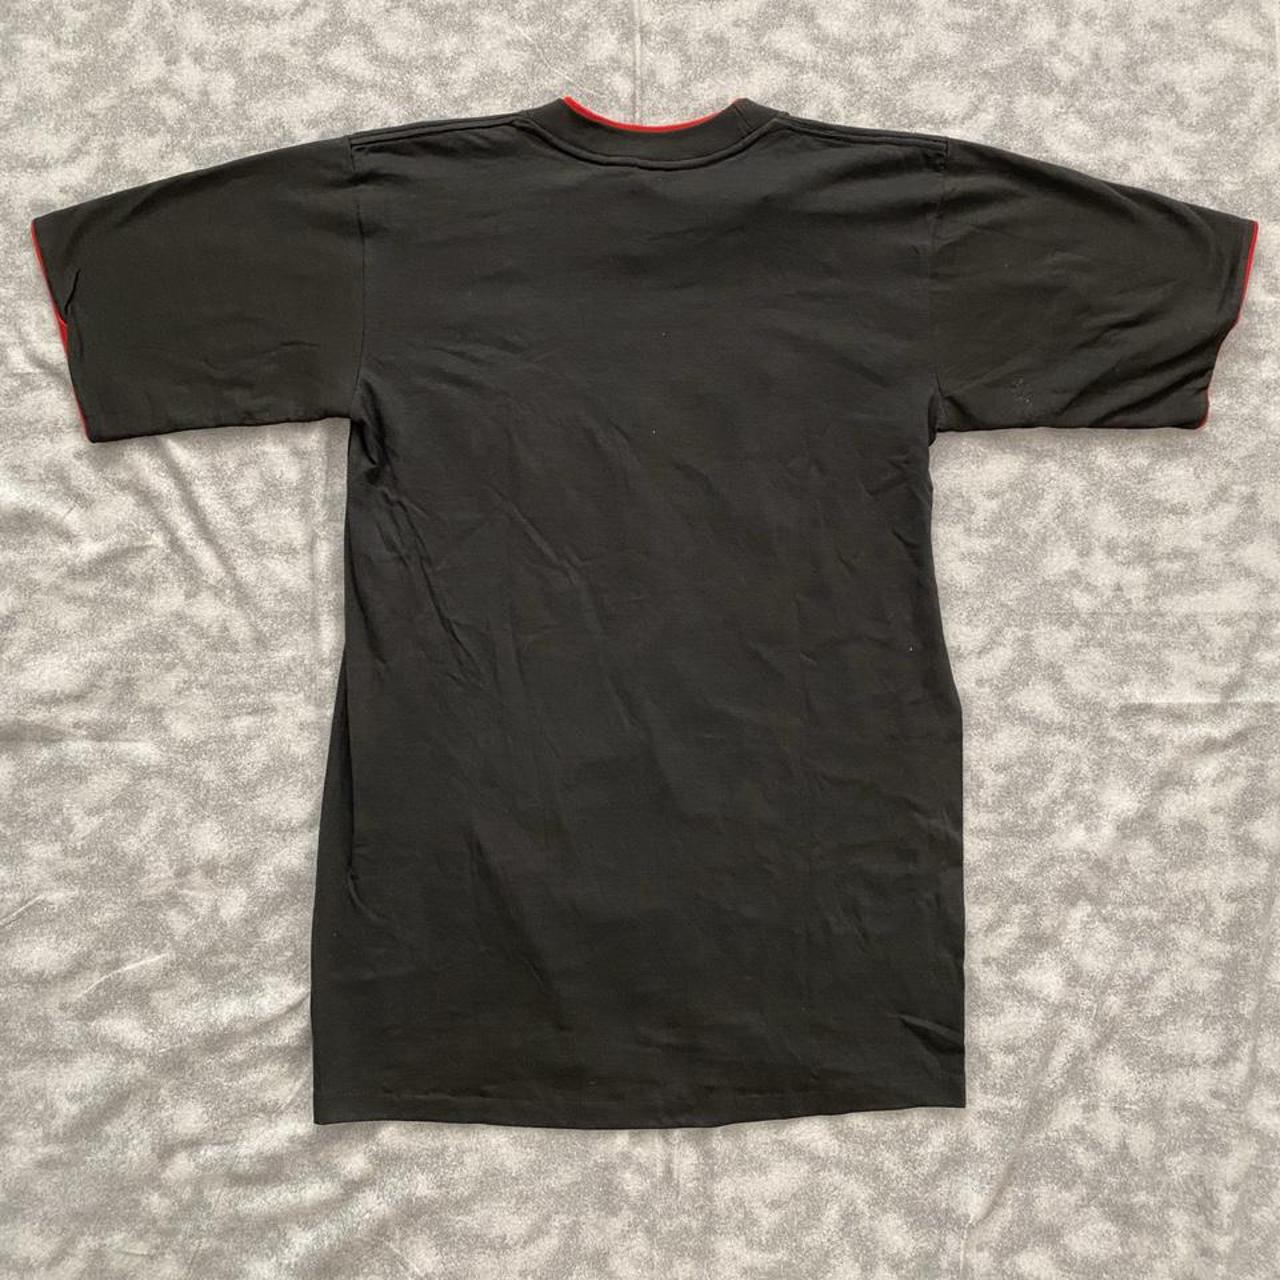 Salem Sportswear Men's Black T-shirt | Depop